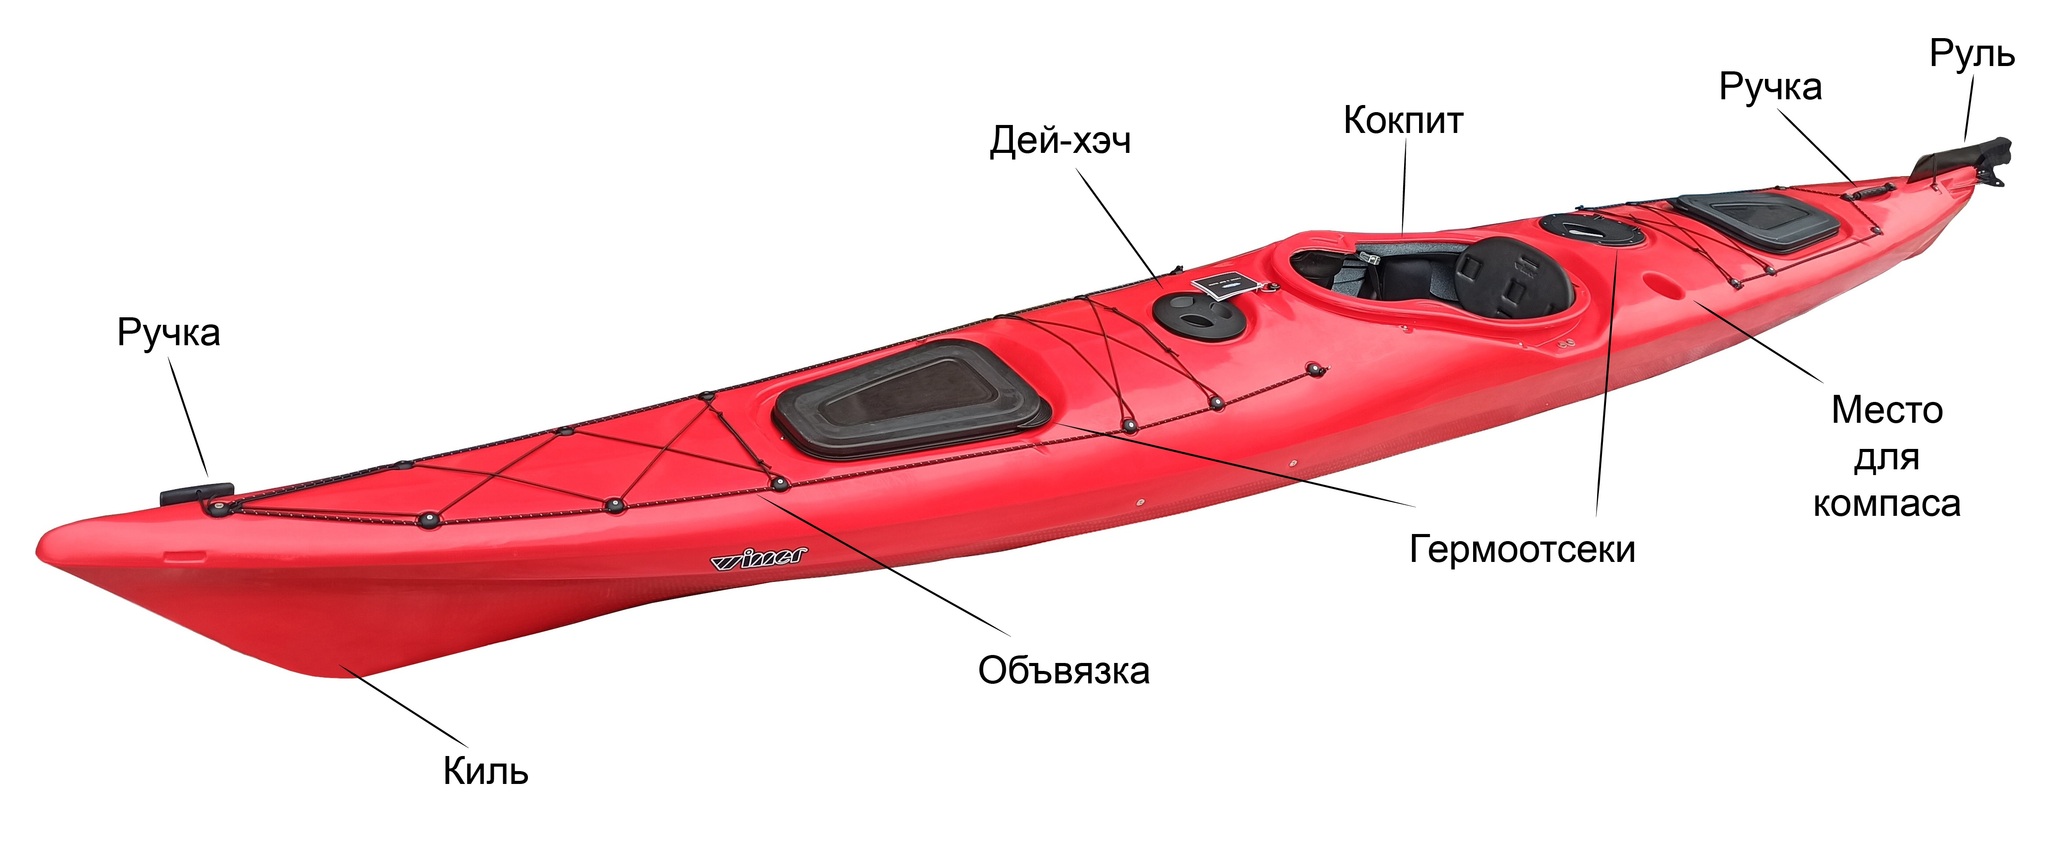 В Бресте Лодки купить по лучшим ценам с доставкой Беларуси